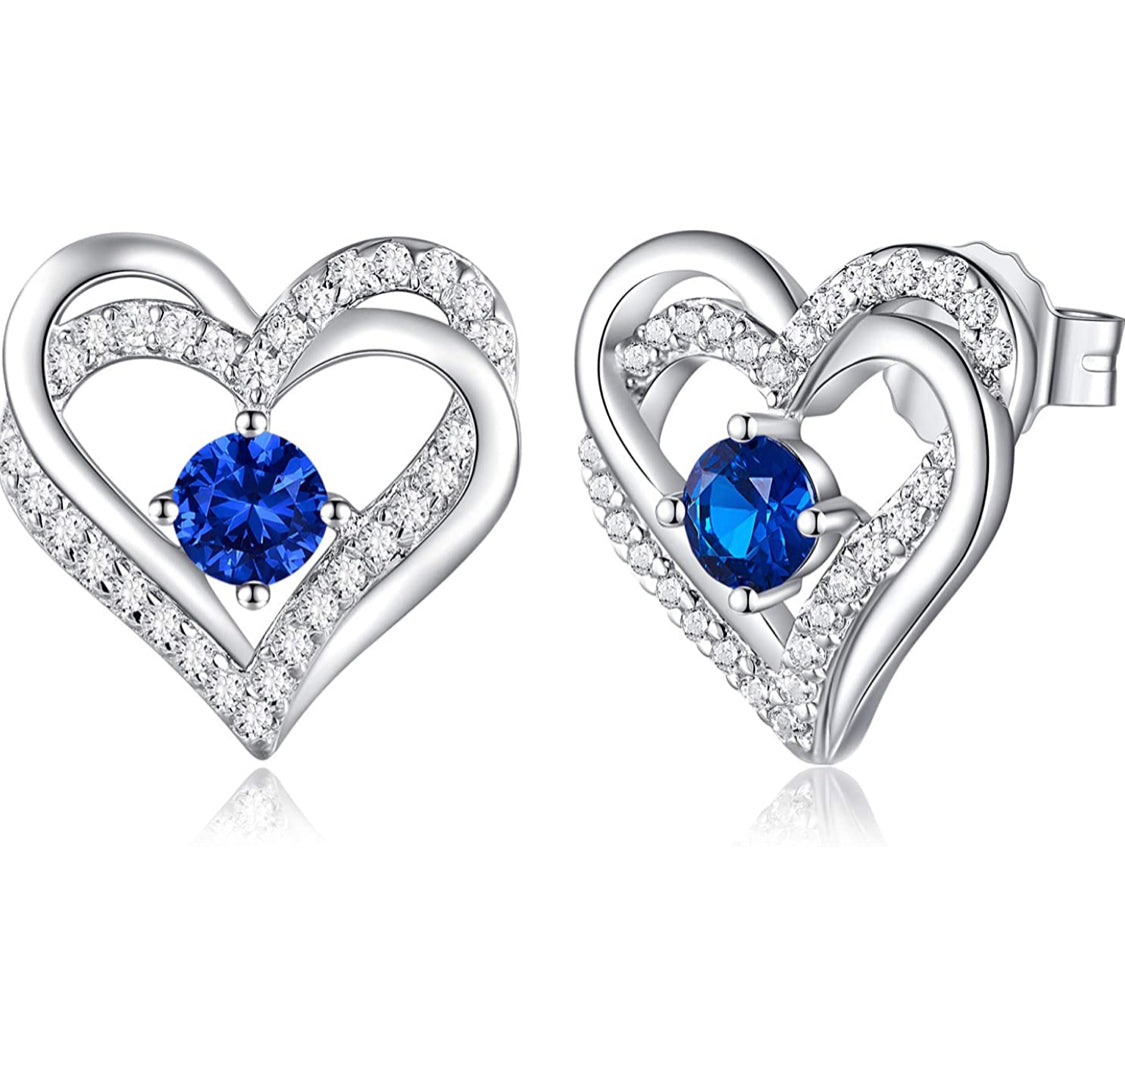 Aretes de corazón azul rey de cristales Swarovski